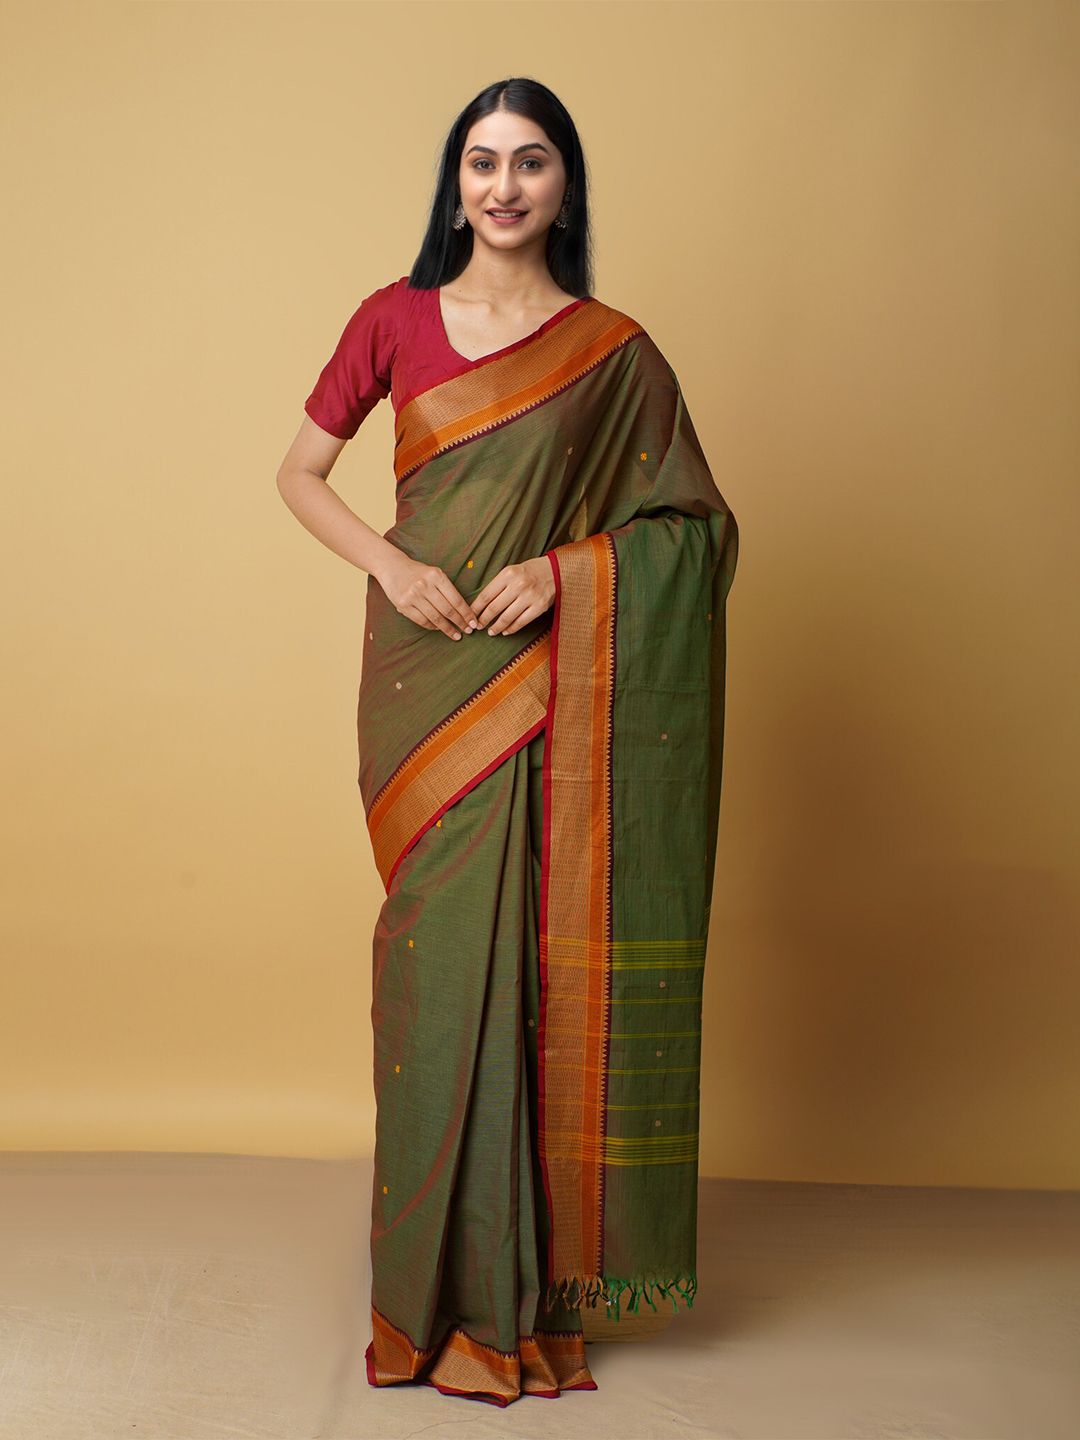 Unnati Silks Women Green & Orange Pure Cotton Chettinad Saree Price in India